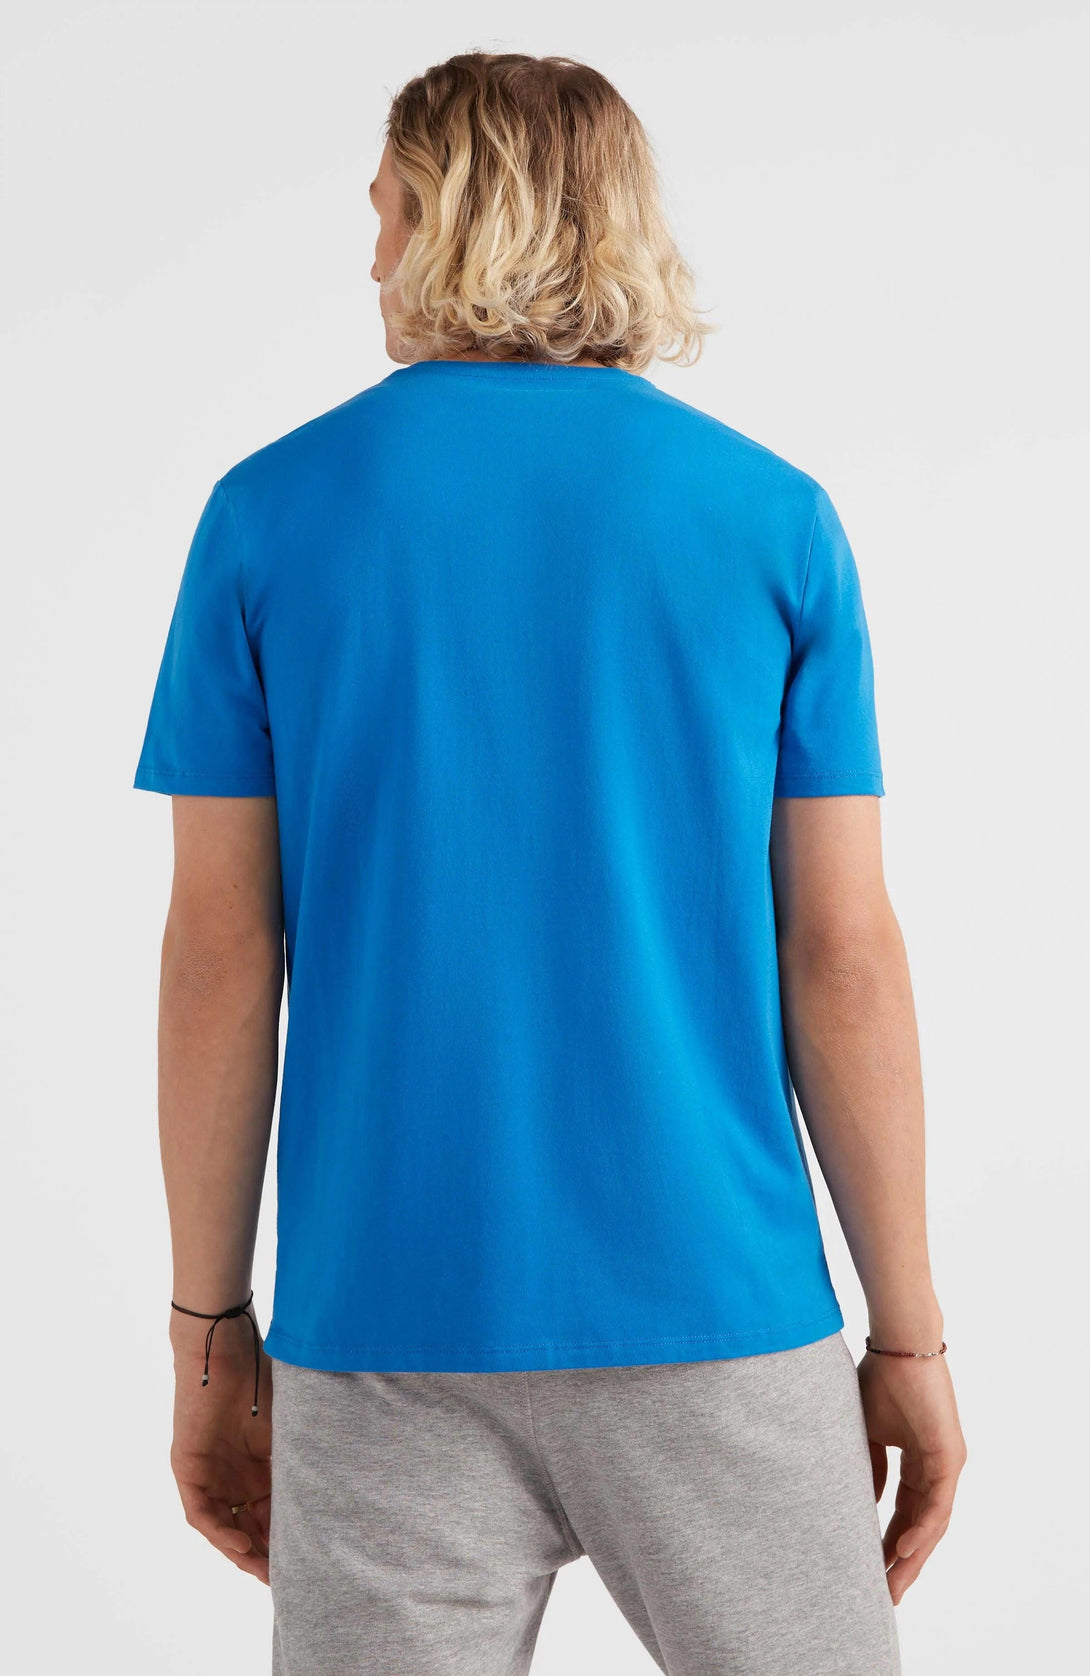 O'Neill Arrowhead póló, kék - Sportmania.hu